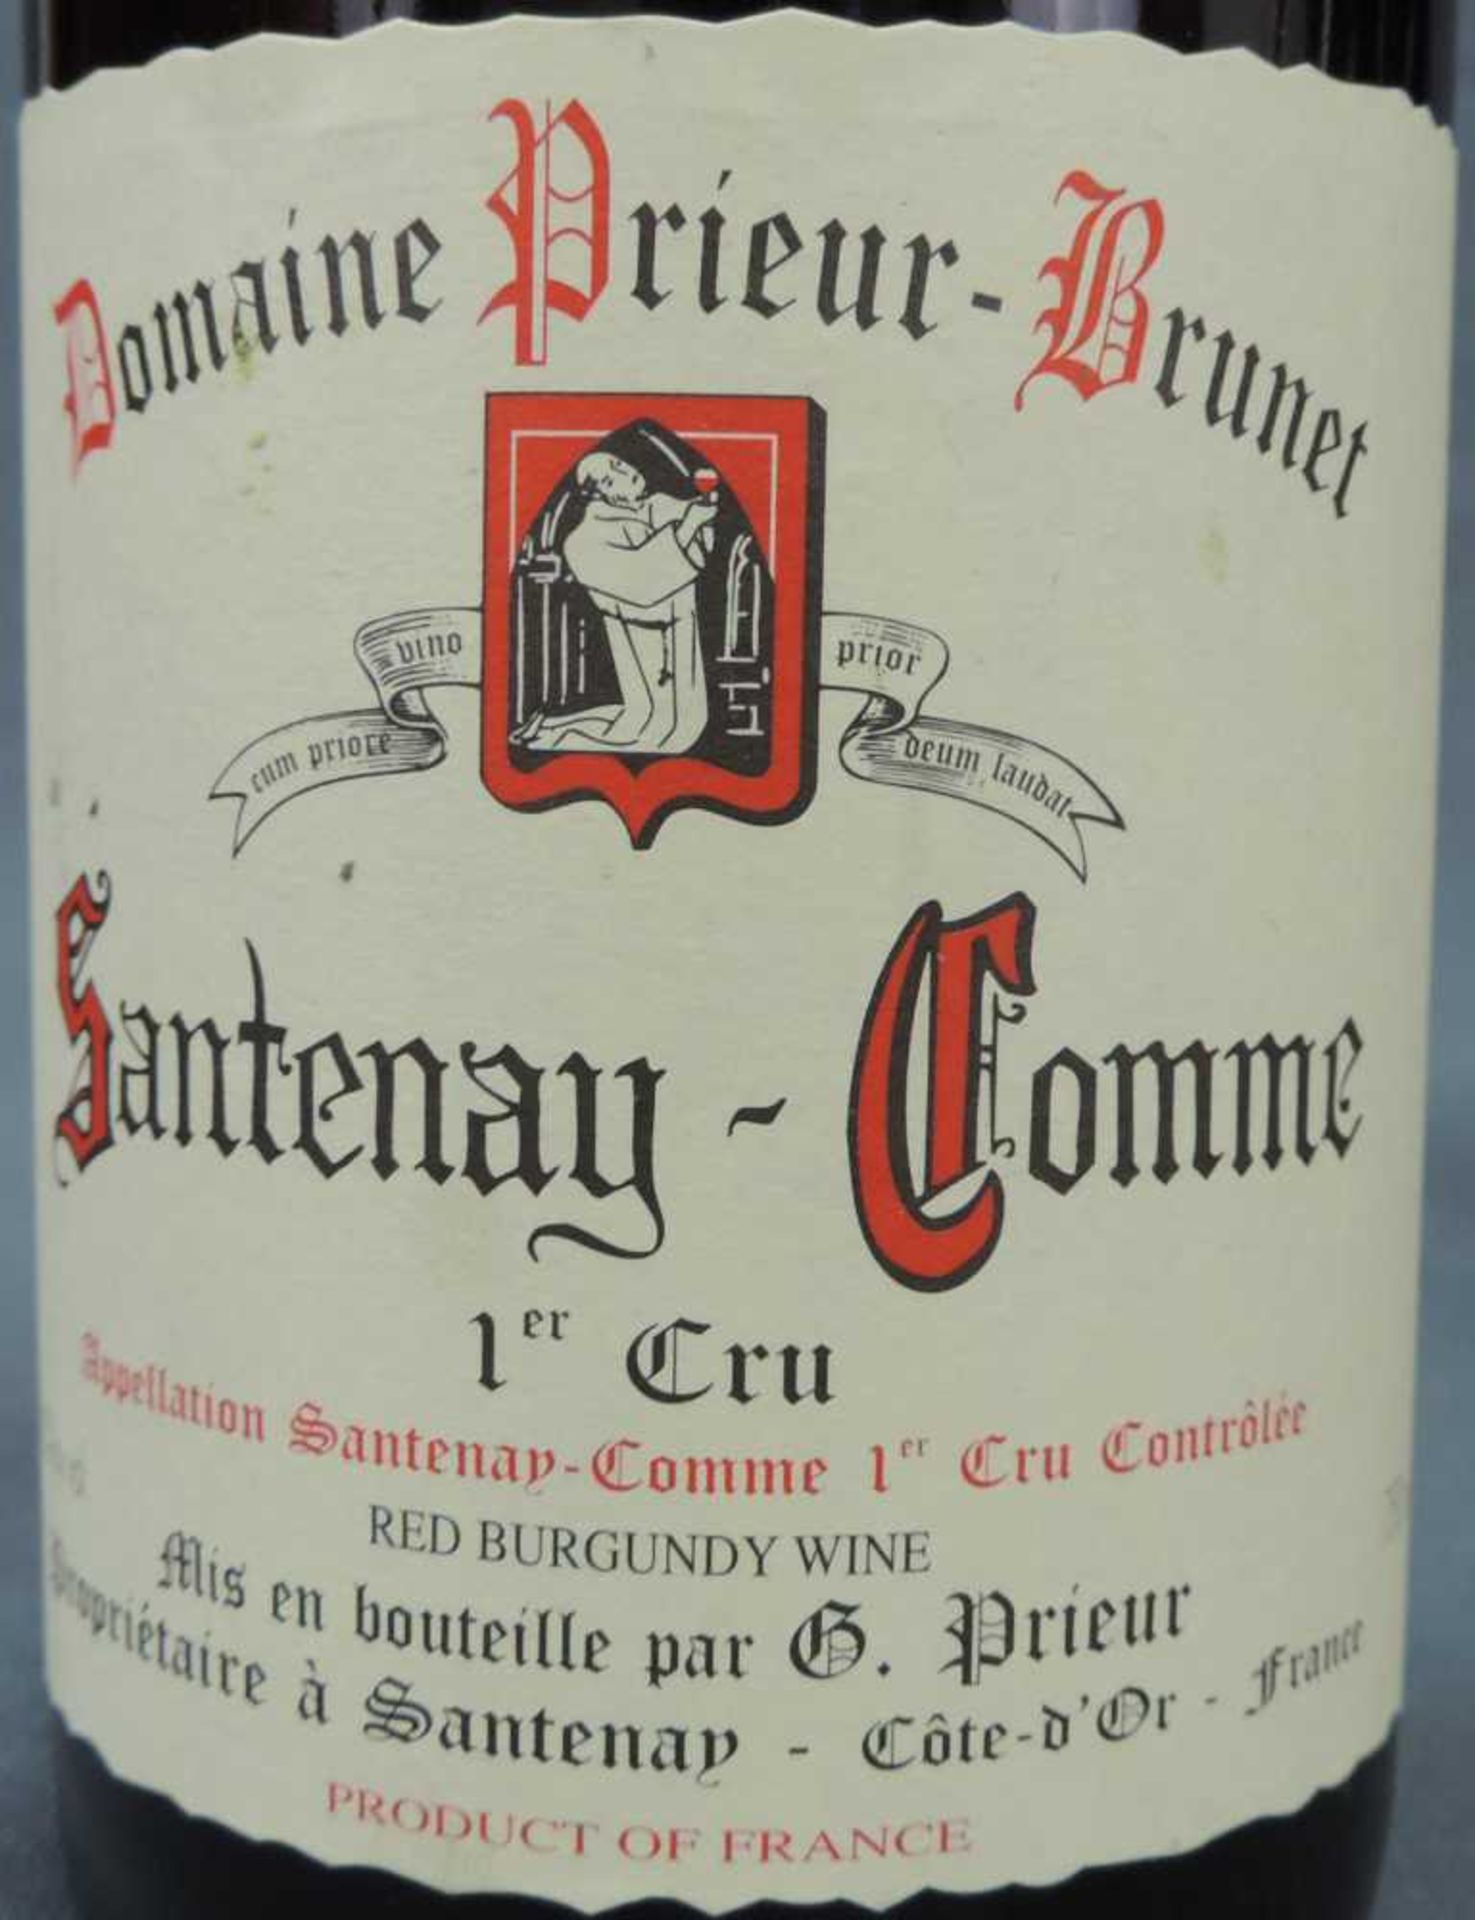 2000 Domaine Prieur - Brunet, Satenay Comme Premier Cru, France. 8 Flaschen, 750 ml, Alc., 13,5% - Bild 3 aus 6